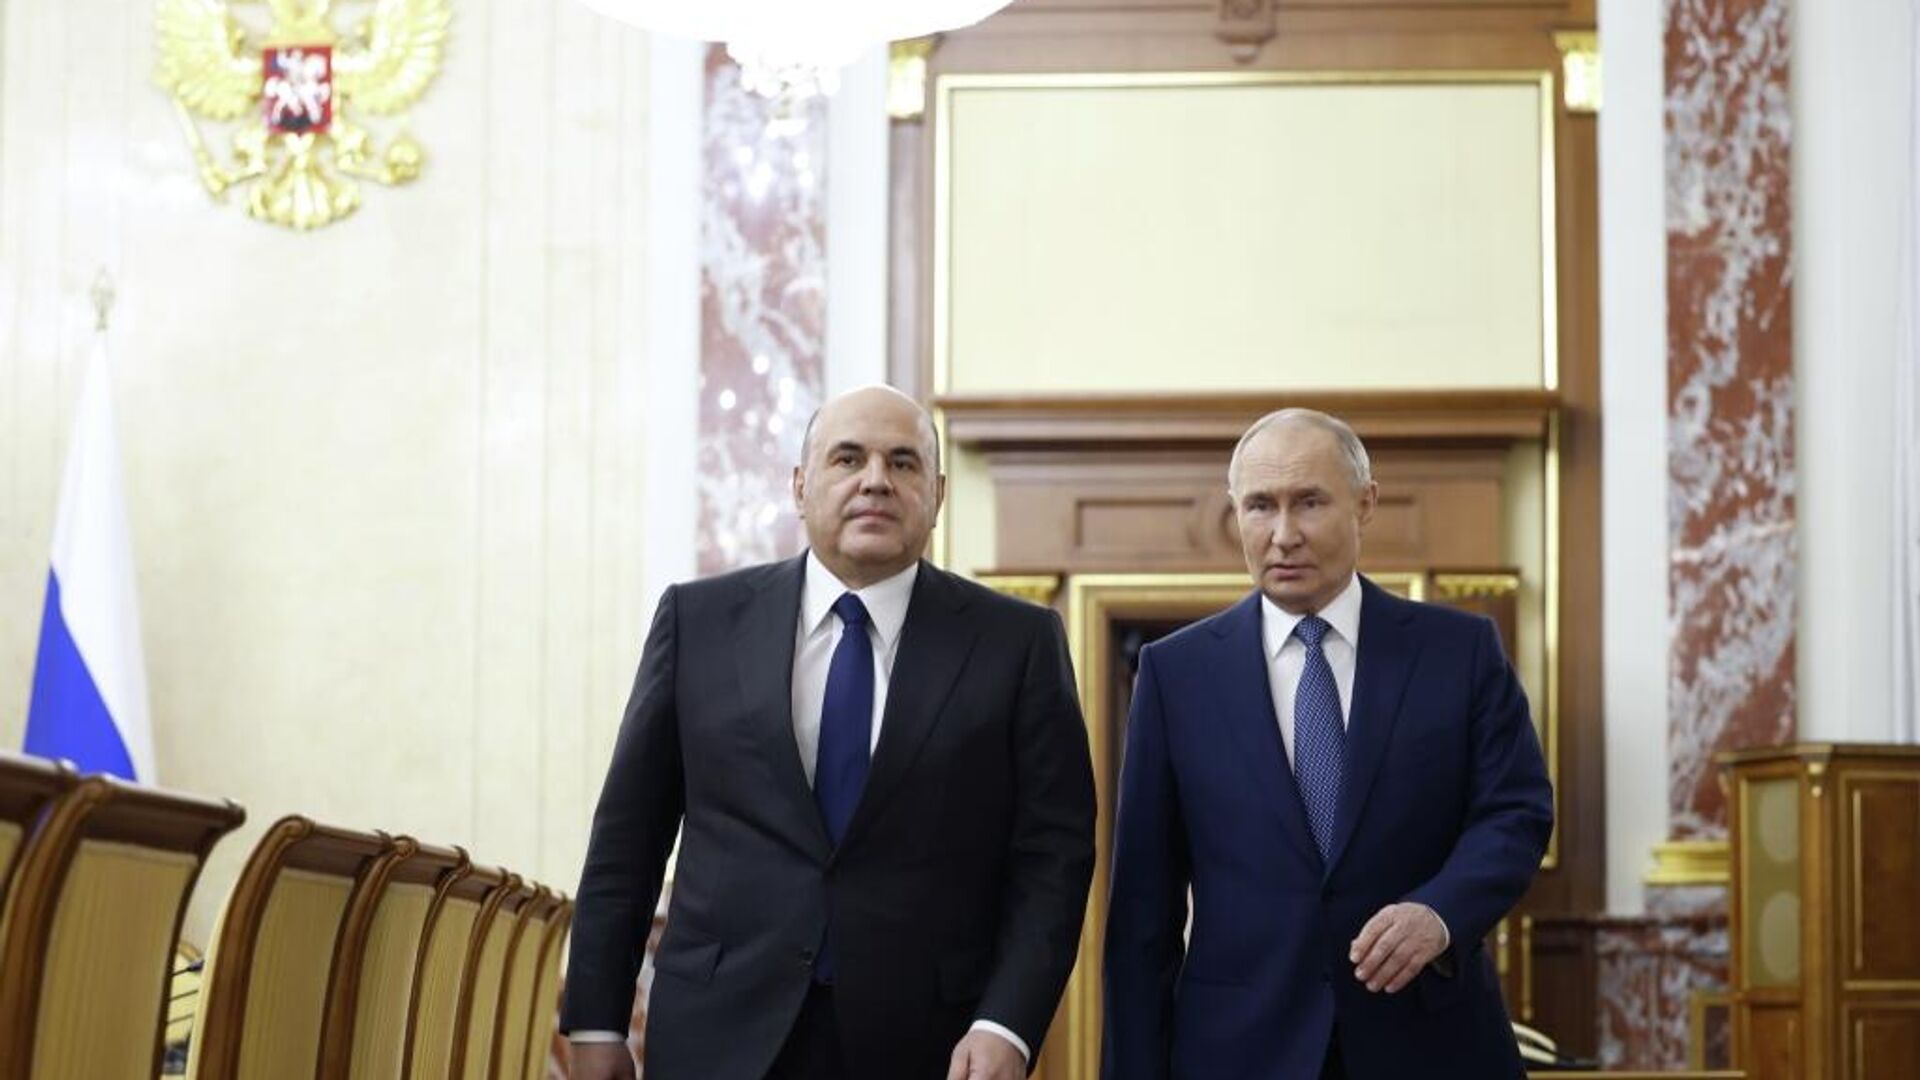  Путин на встрече с членами правительства1